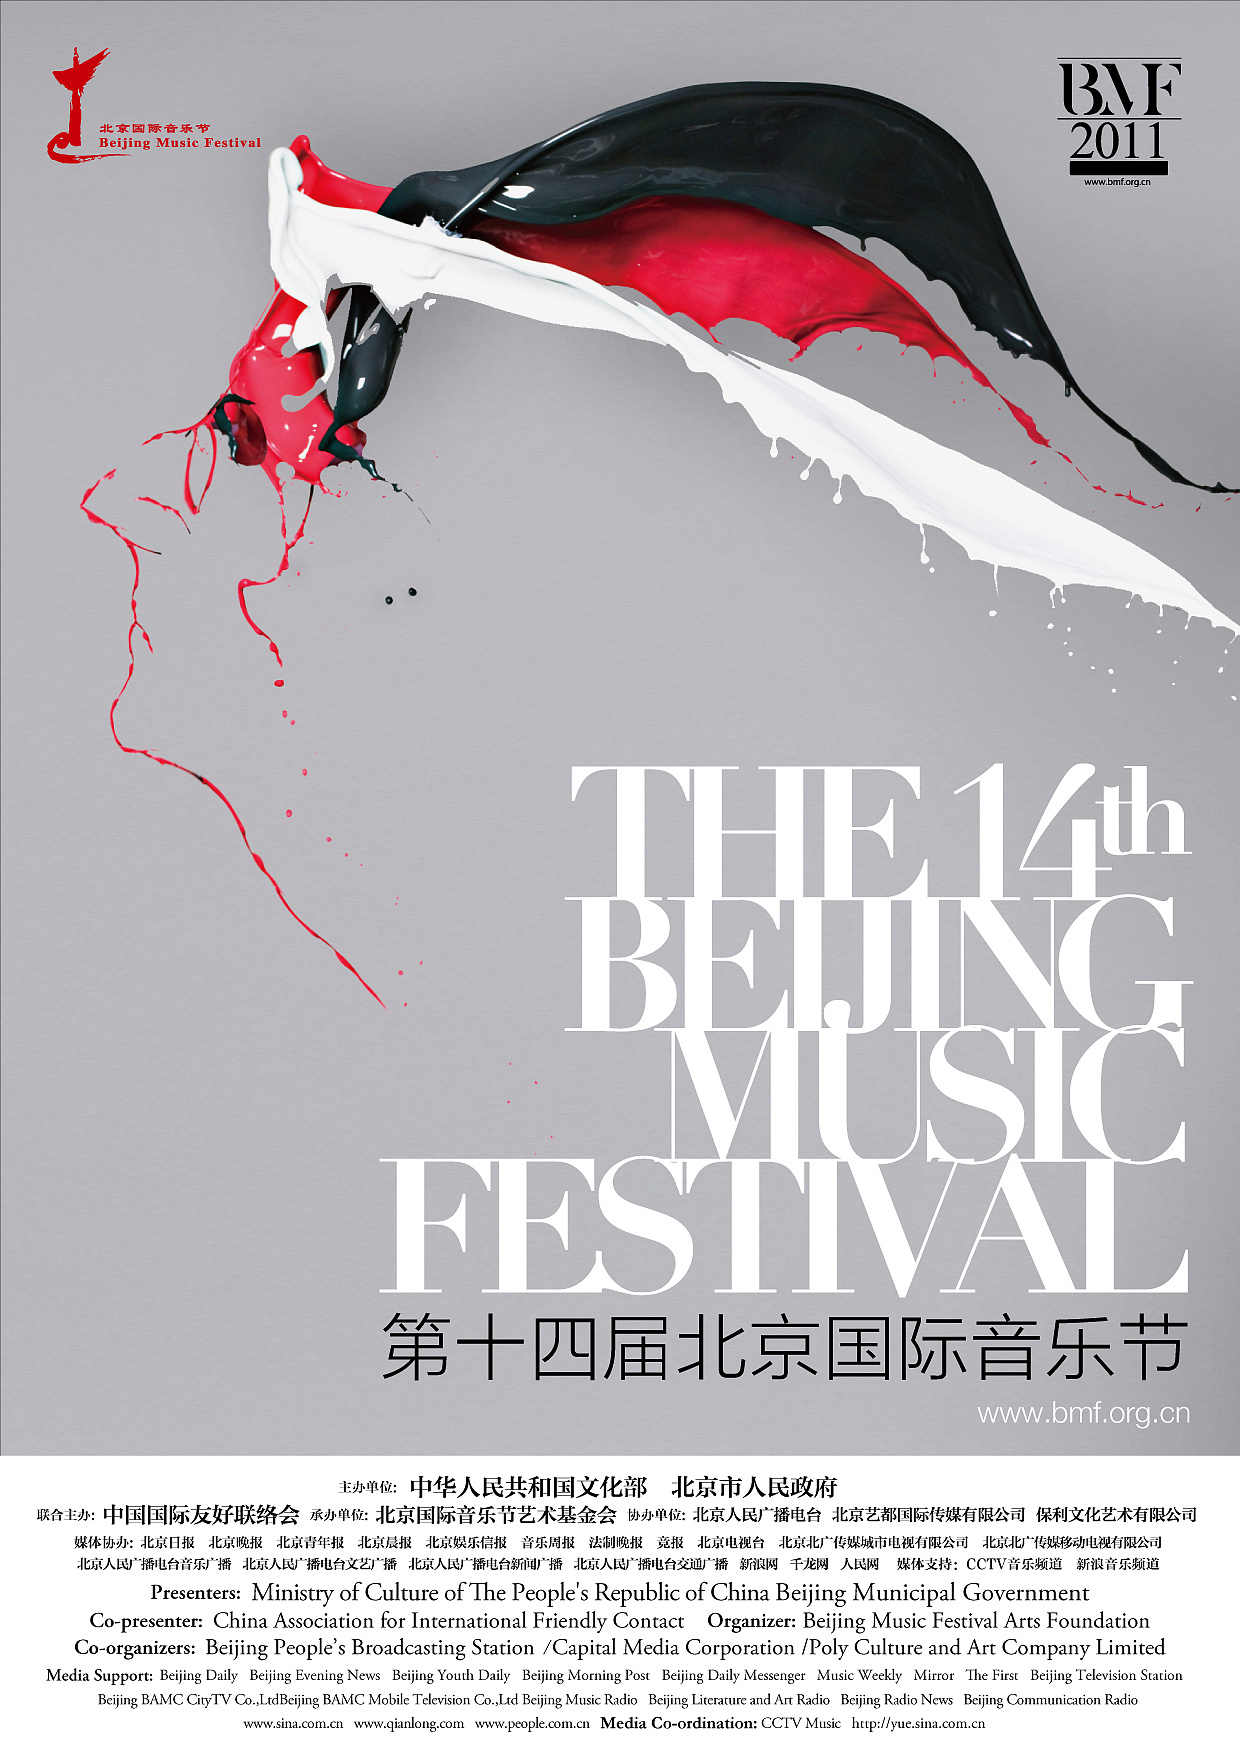 【即将发布】 第二十四届北京国际音乐节 (The 24th Beijing Music Festival) 2021.10.09-10.24